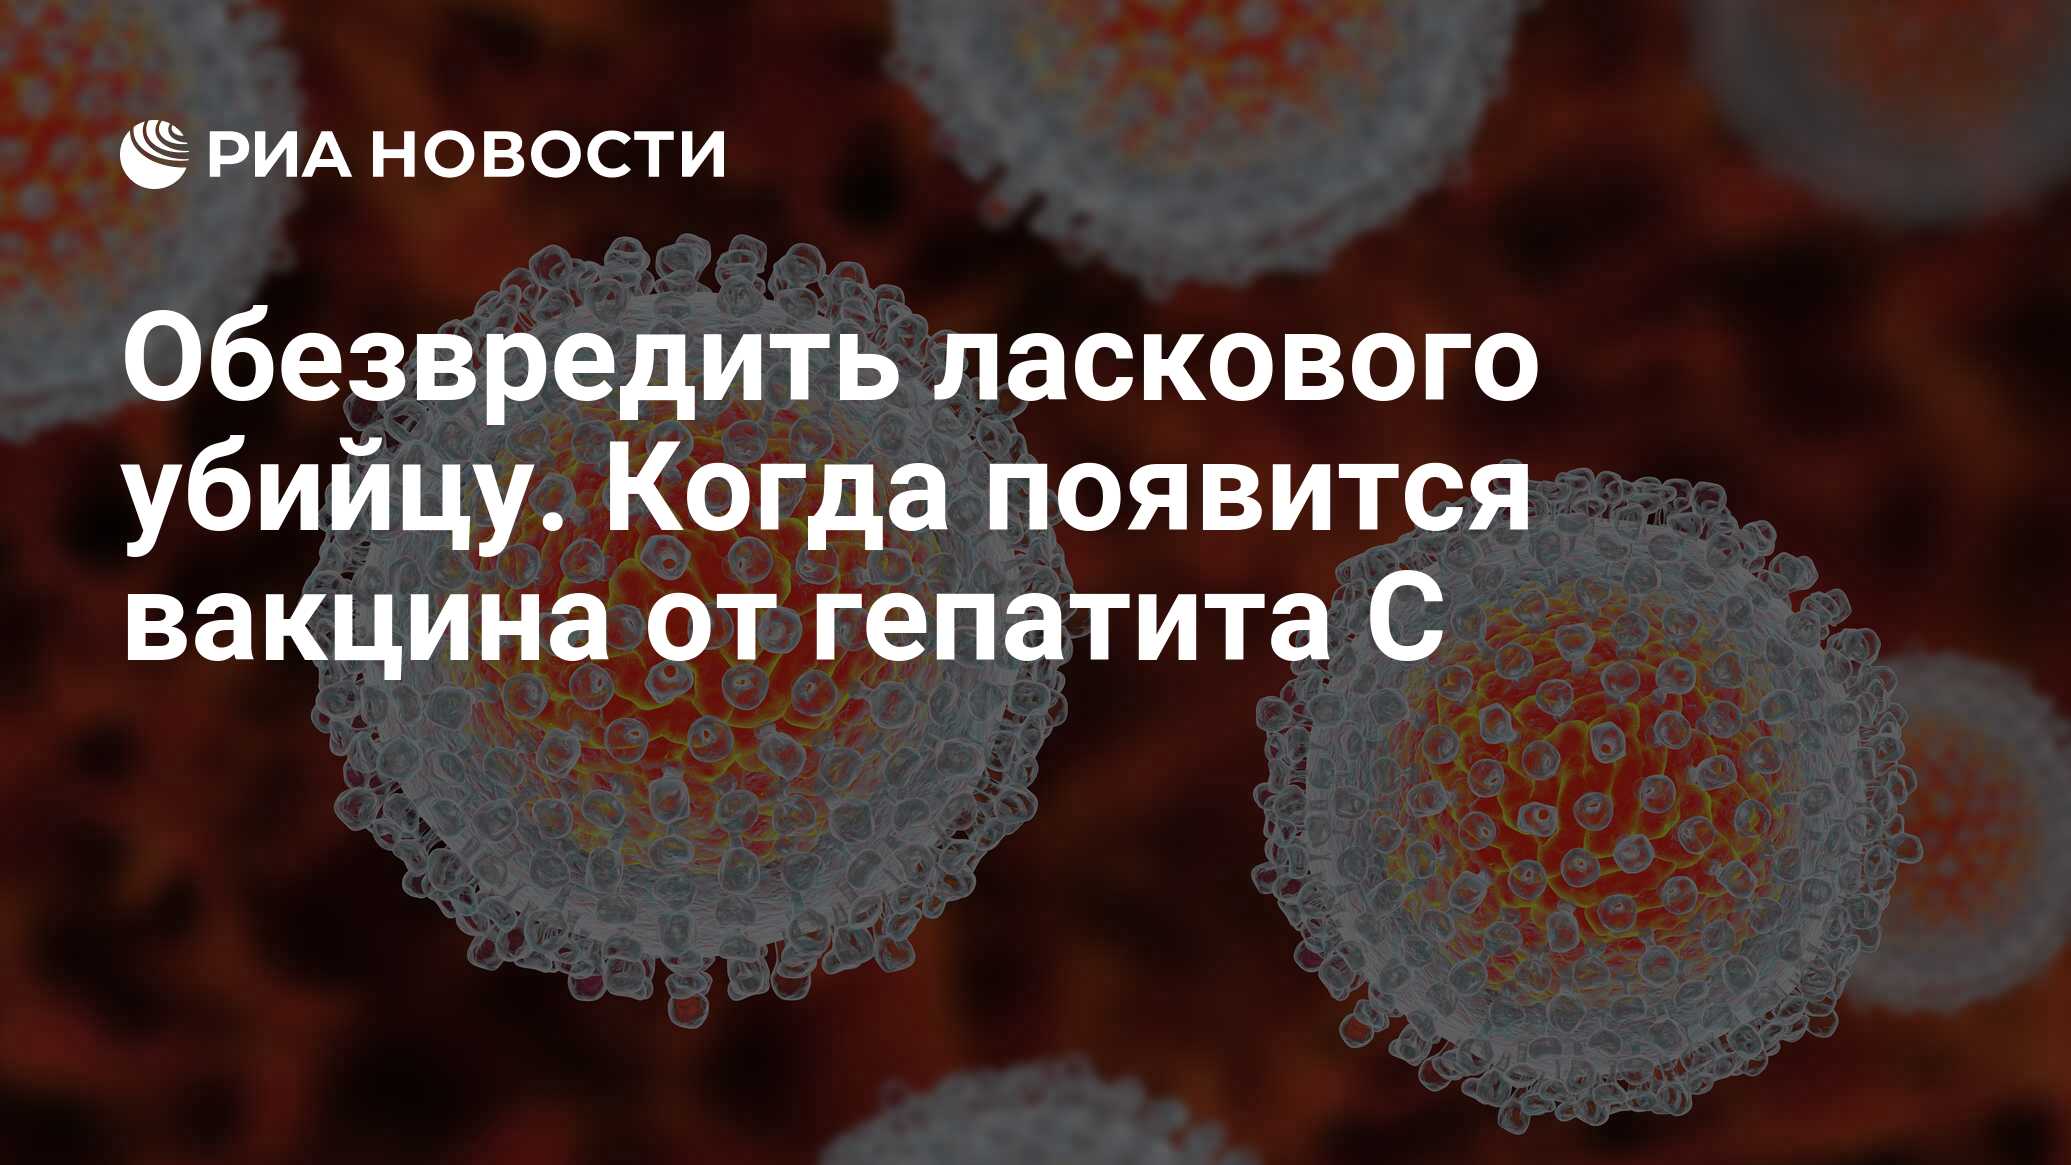 Вакцина от гепатита с найдена в россии thumbnail